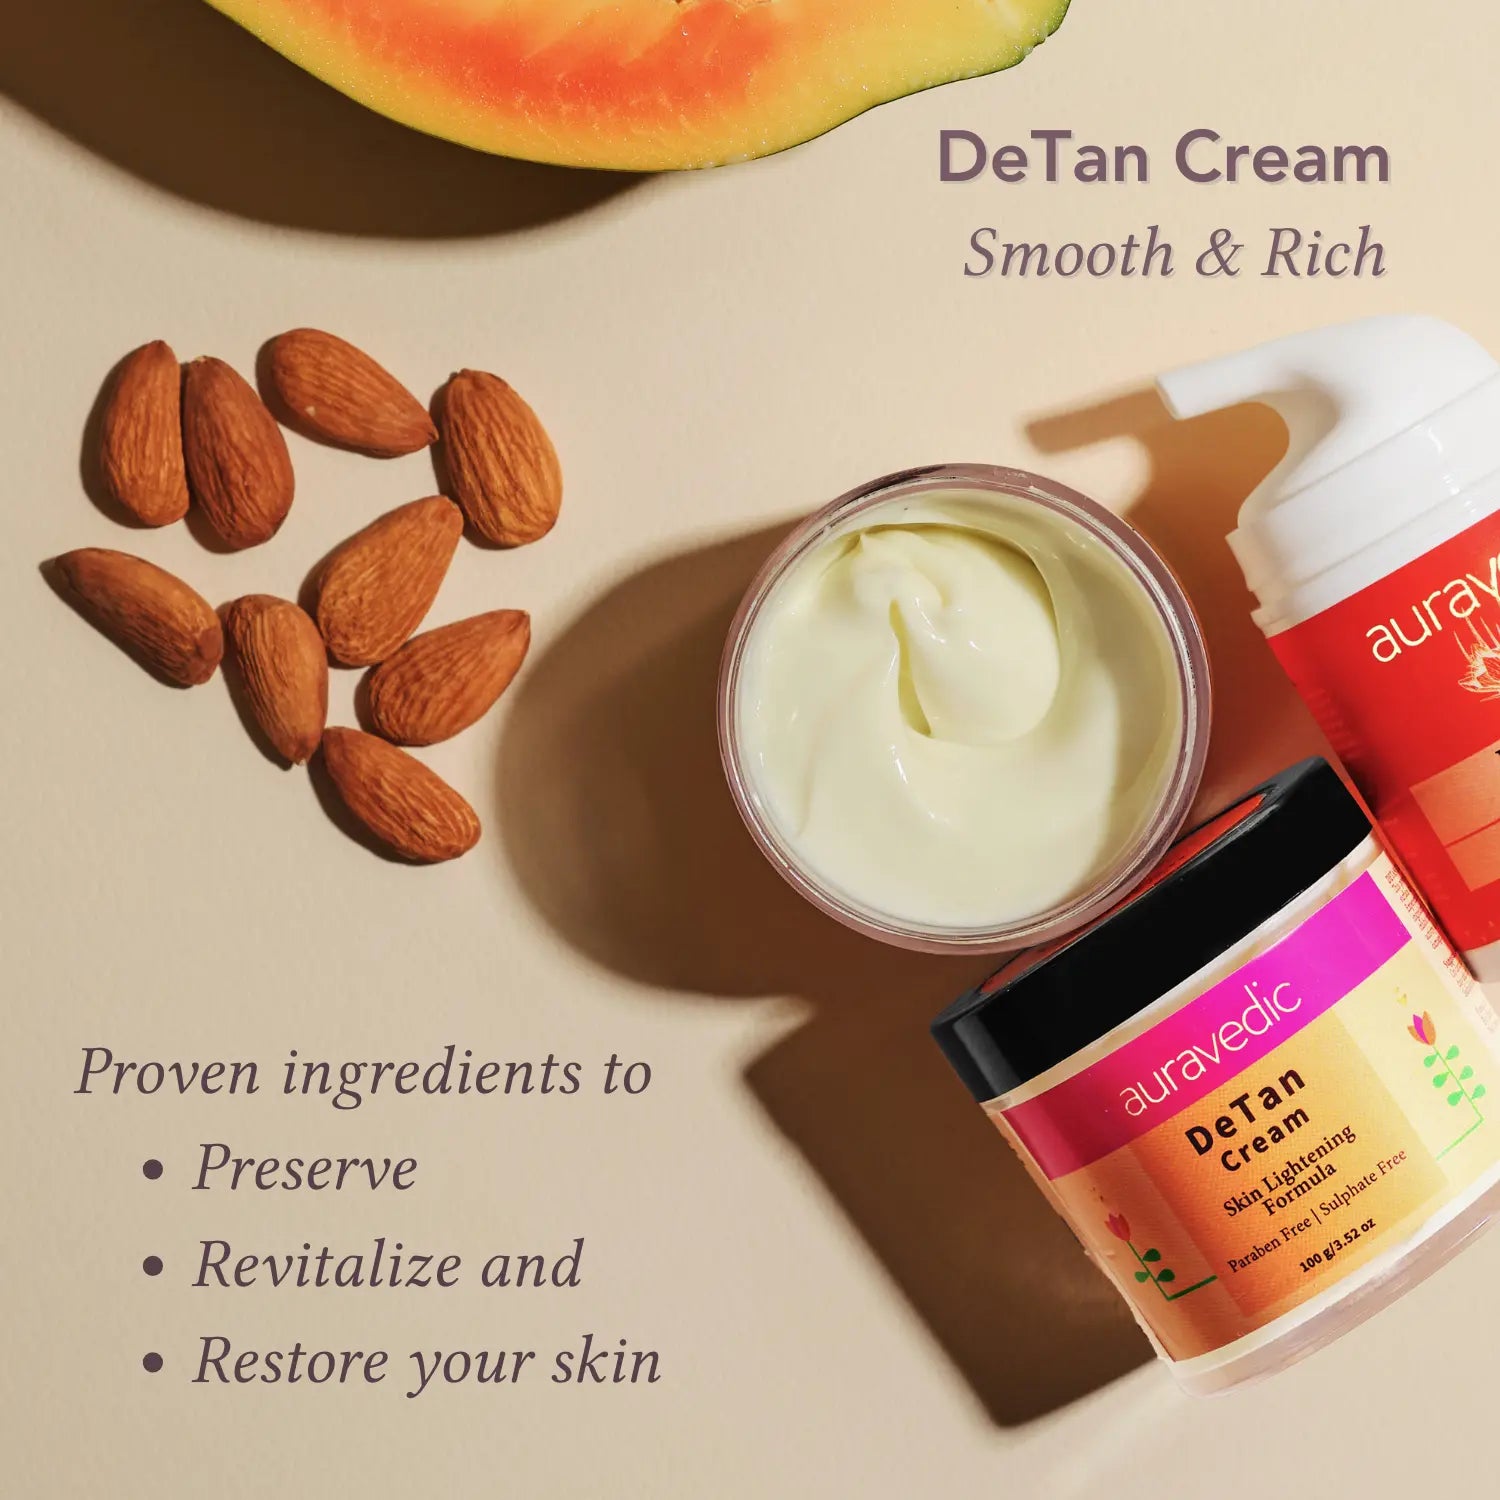 De-Tan Cream